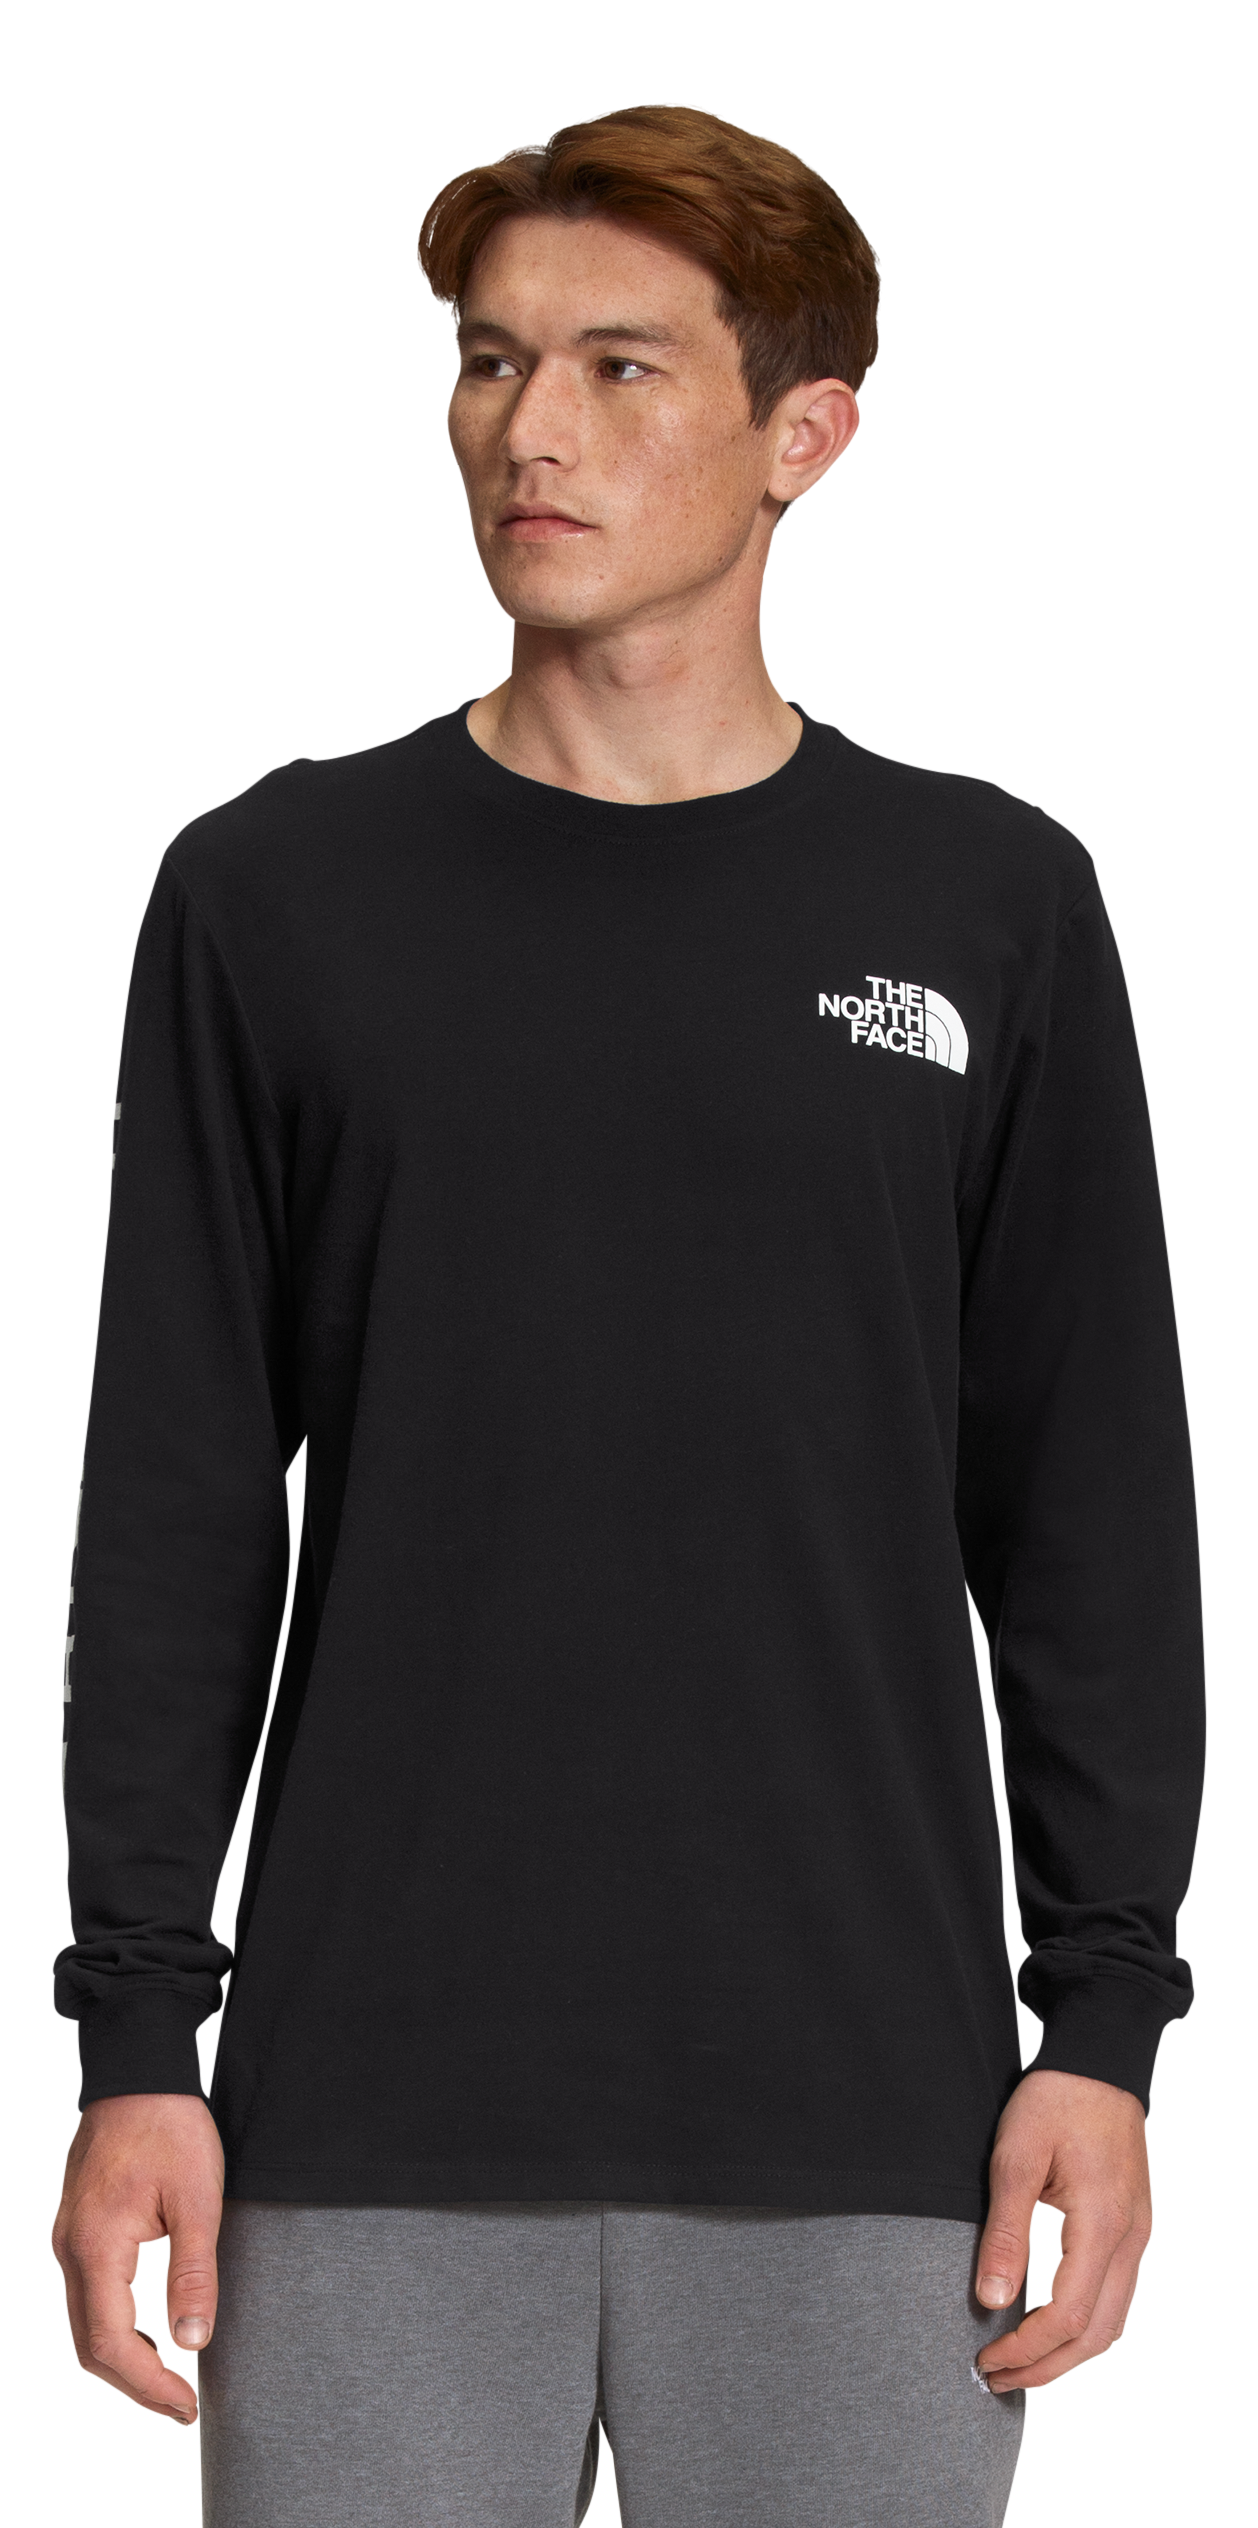 The North Face TNF Sleeve Hit Long-Sleeve T-Shirt for Men - TNF Black/TNF White - S